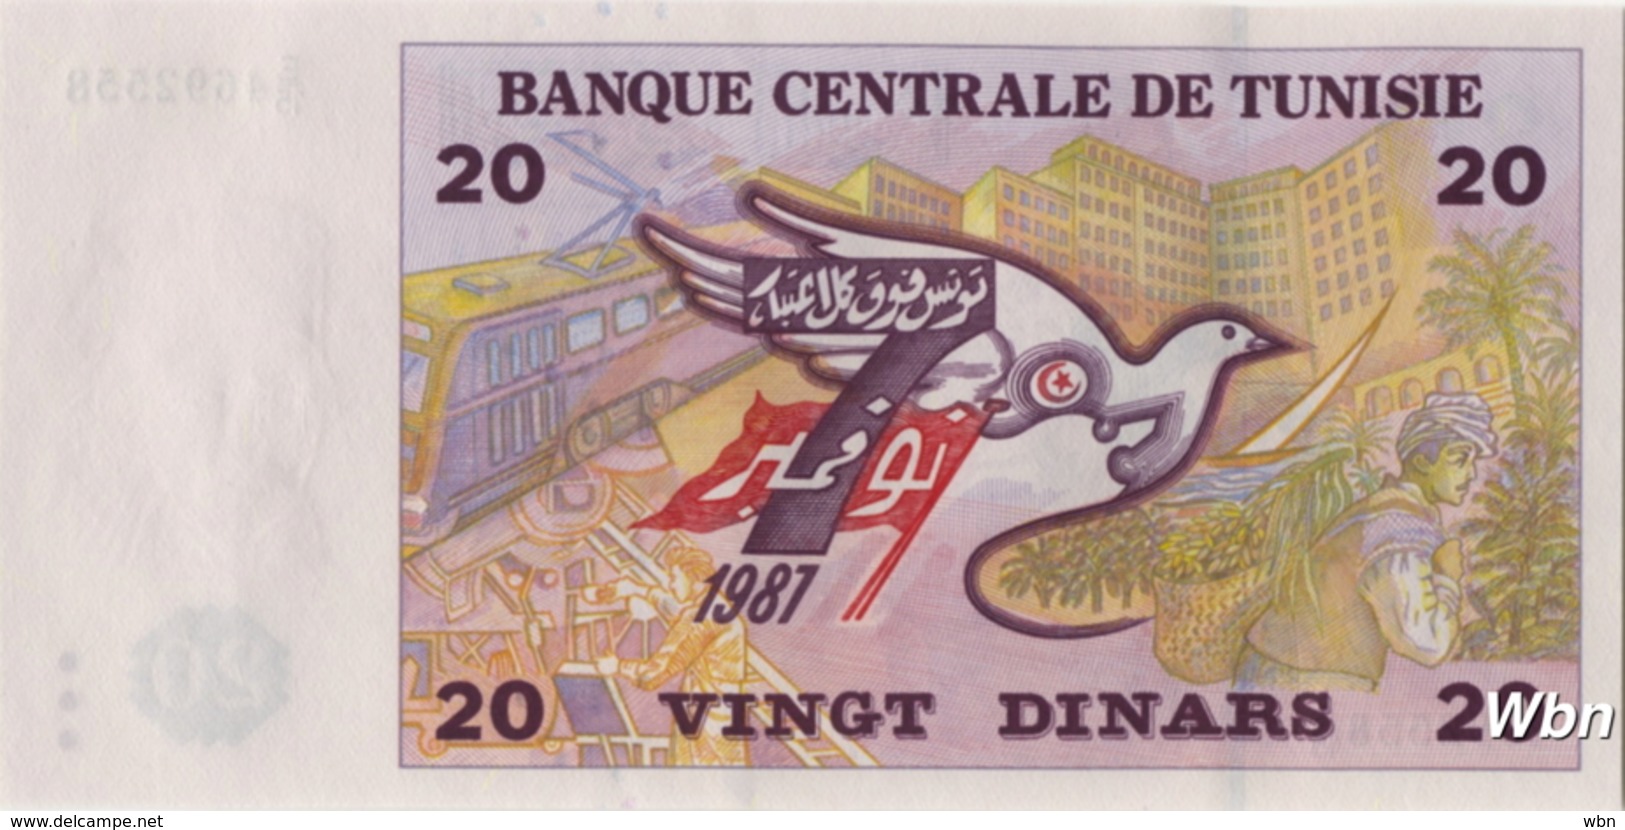 Tunisie 20 Dinars (P88) 1992 (Pref: E/15) -UNC- - Tunisie